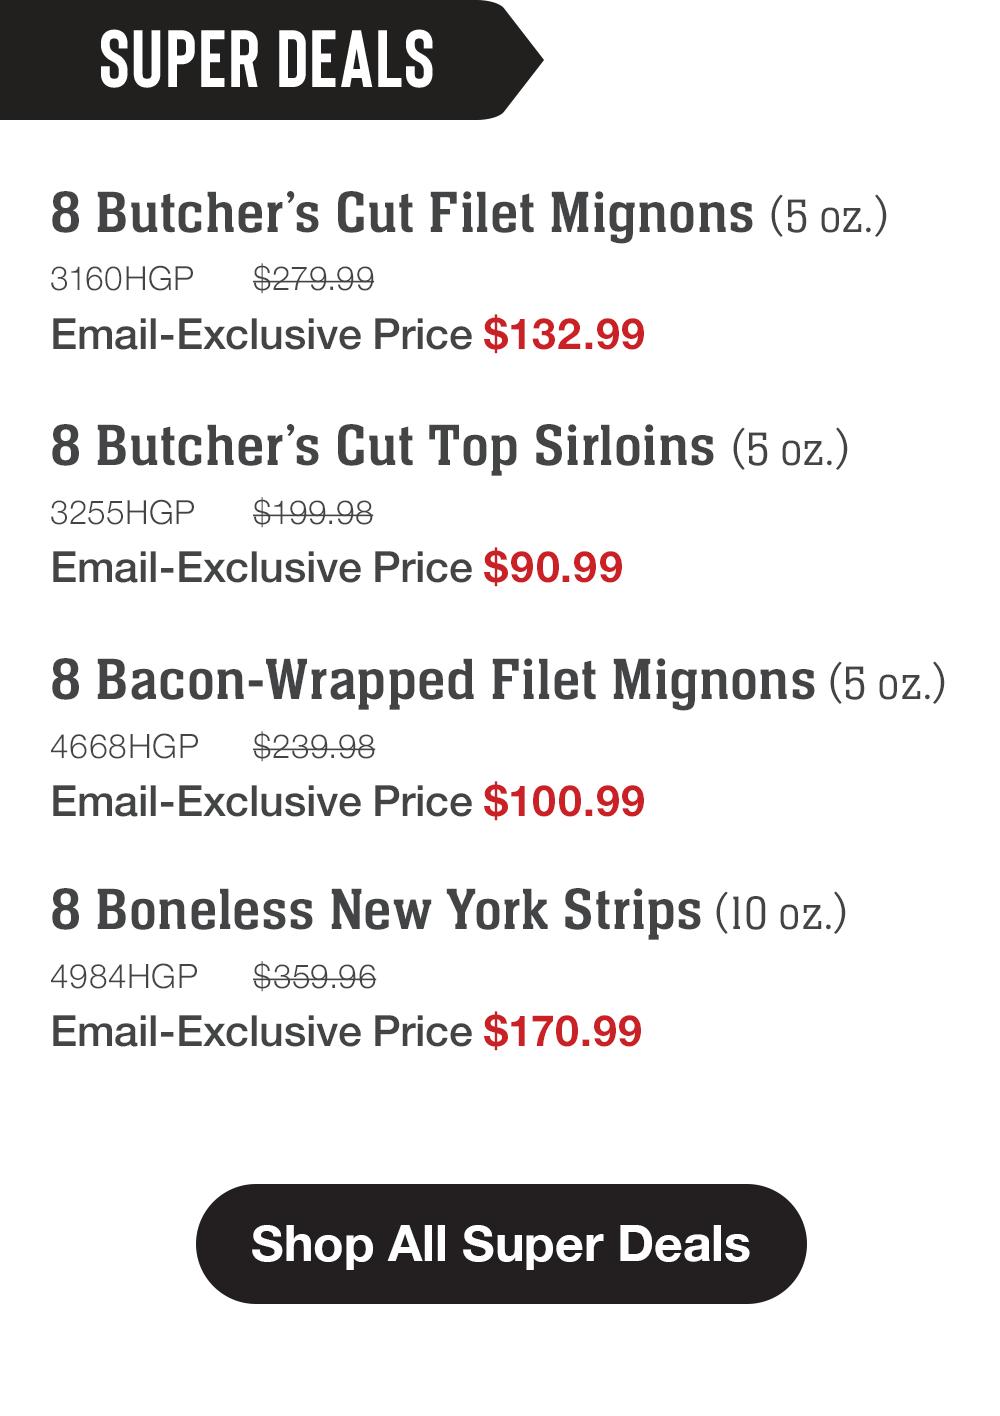 SUPER DEALS | 8 Butcher's Cut Filet Mignons (5 oz.) - 3160HGP $279.99 Email-Exclusive Price $132.99 | 8 Butcher's Cut Top Sirloins (5 oz.) - 3255HGP $199.98 Email-Exclusive Price $90.99 | 8 Bacon-Wrapped Filet Mignons (5 oz.) - 4668HGP $239.98 Email-Exclusive Price $100.99 | 8 Boneless New York Strips (10 oz.) - 4984HGP $359.96 Email-Exclusive Price $170.99 || Shop All Super Deals